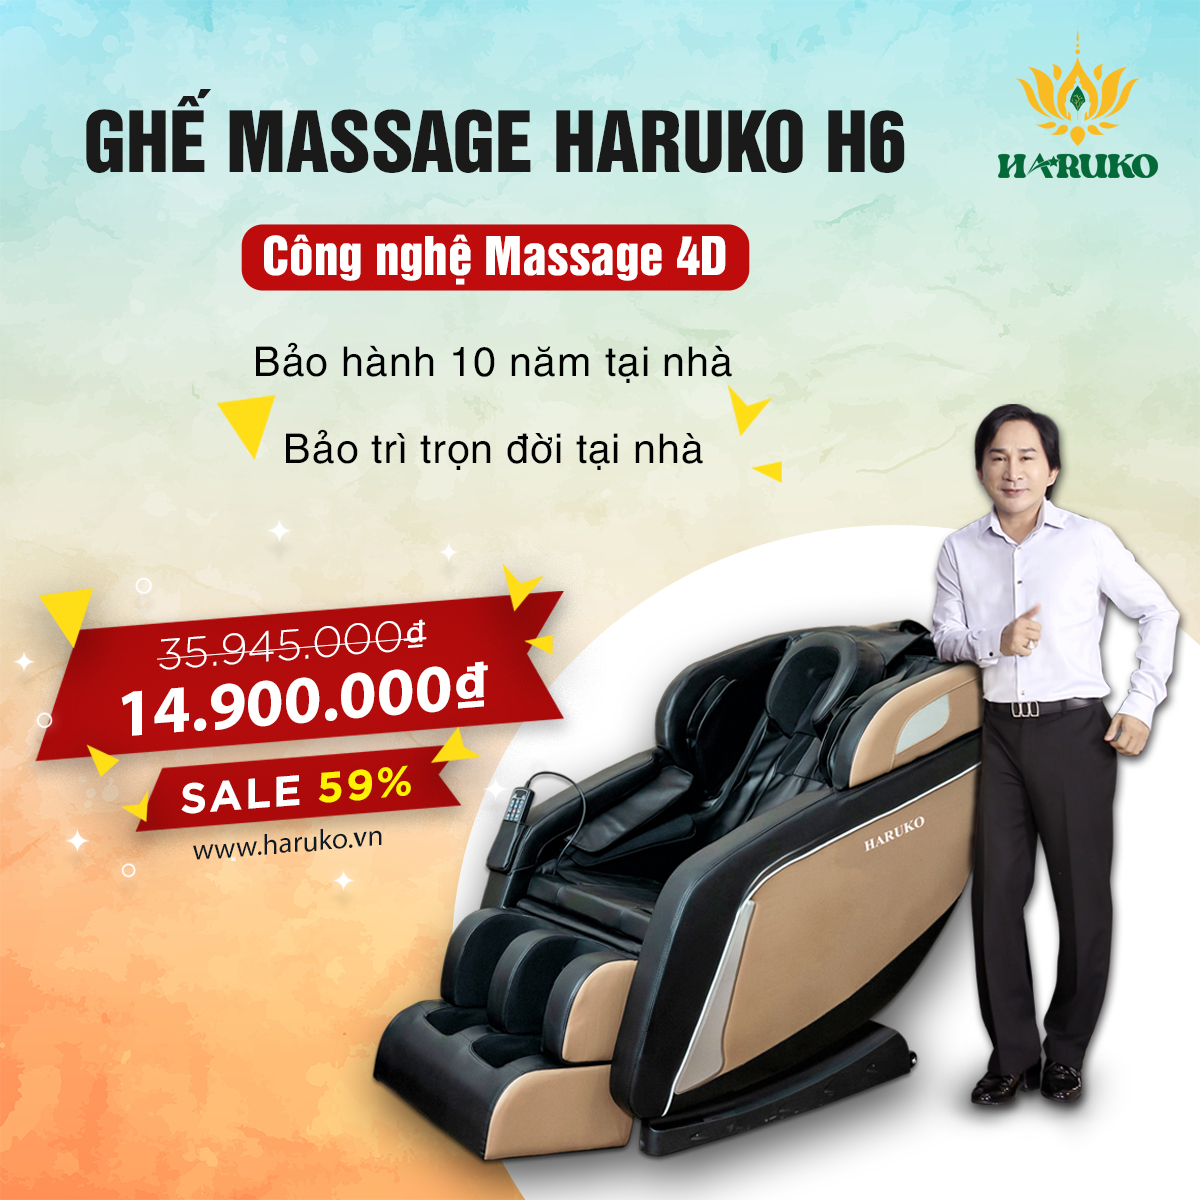 Ghế massage Haruko-H6 với mức giá bình dân luôn là lựa chọn tuyệt vời cho nhiều gia đình